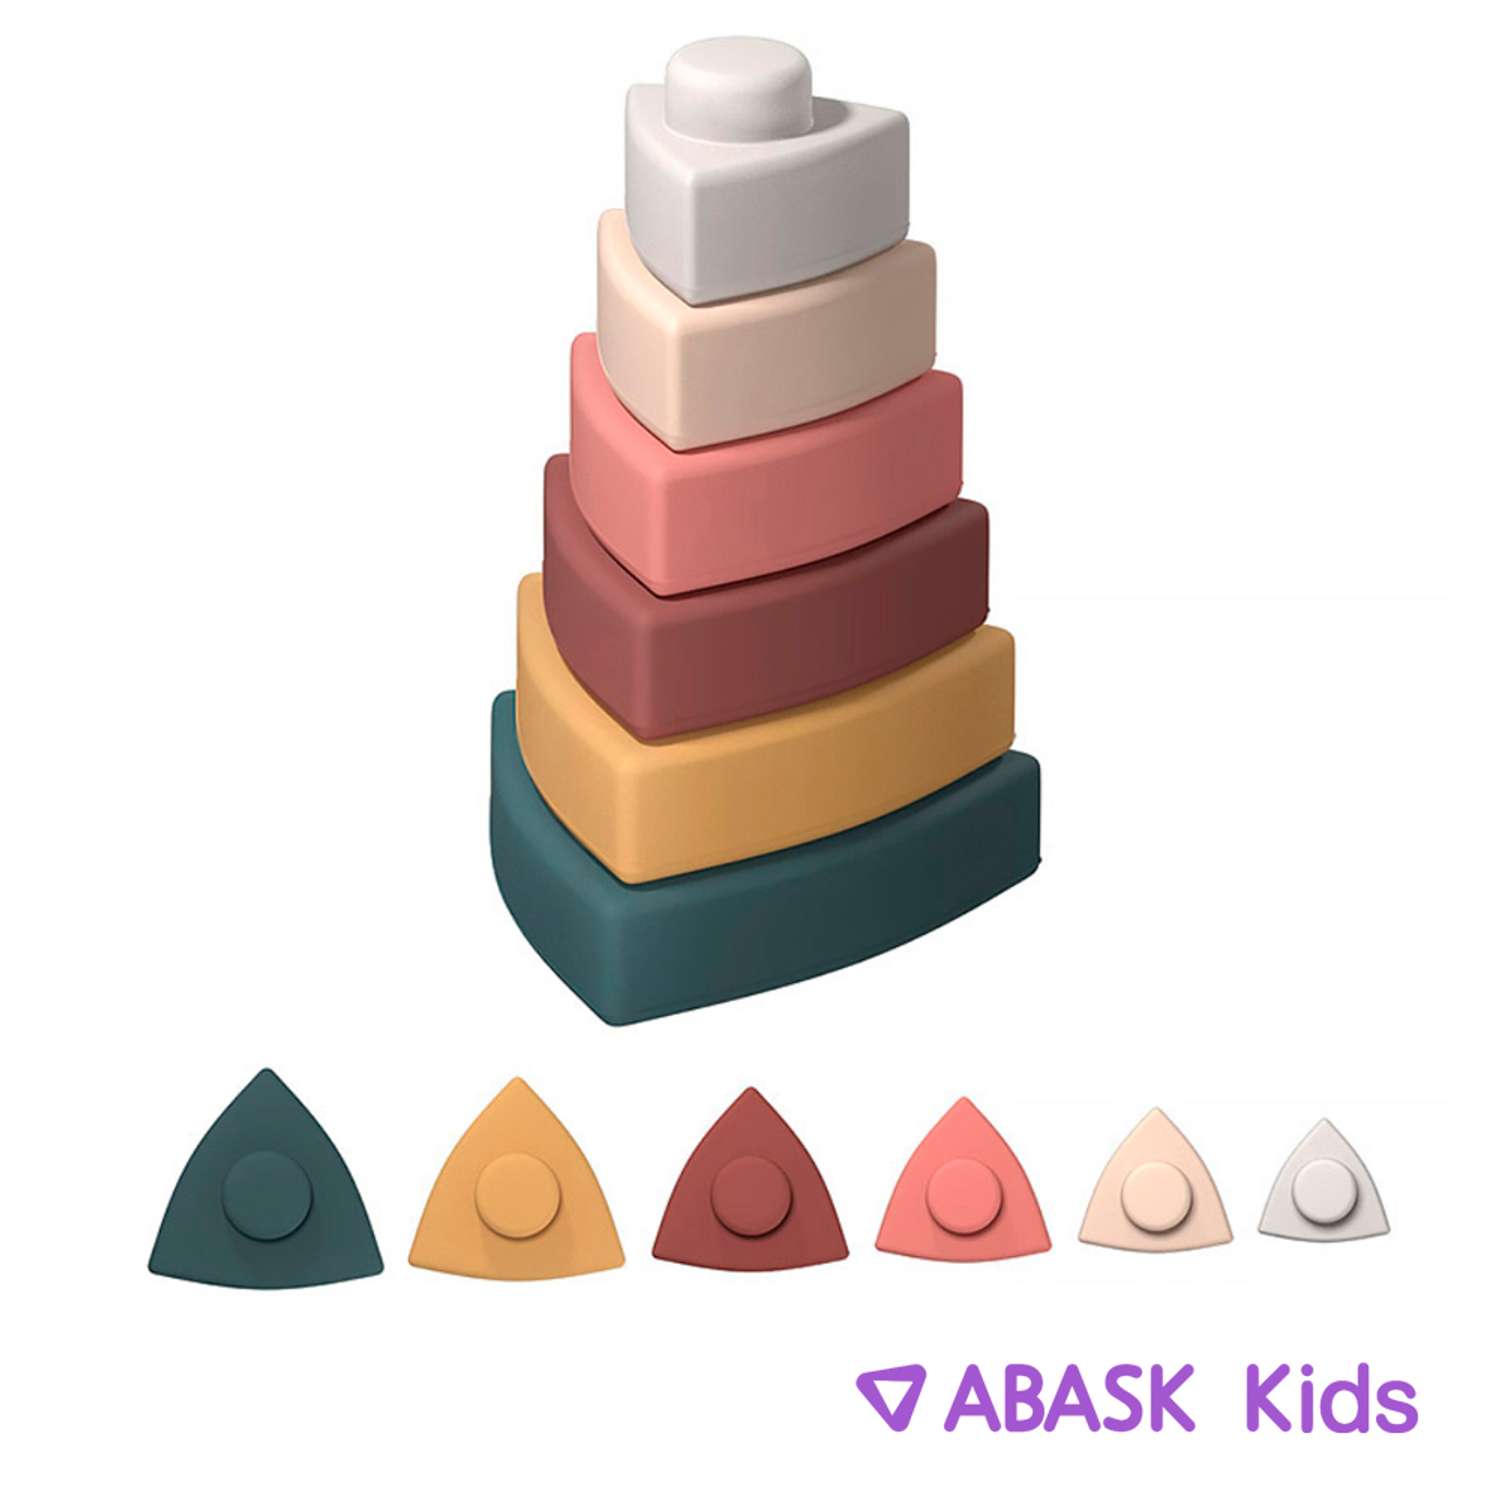 Пирамидка треугольная ABASK BRIGHT - фото 1